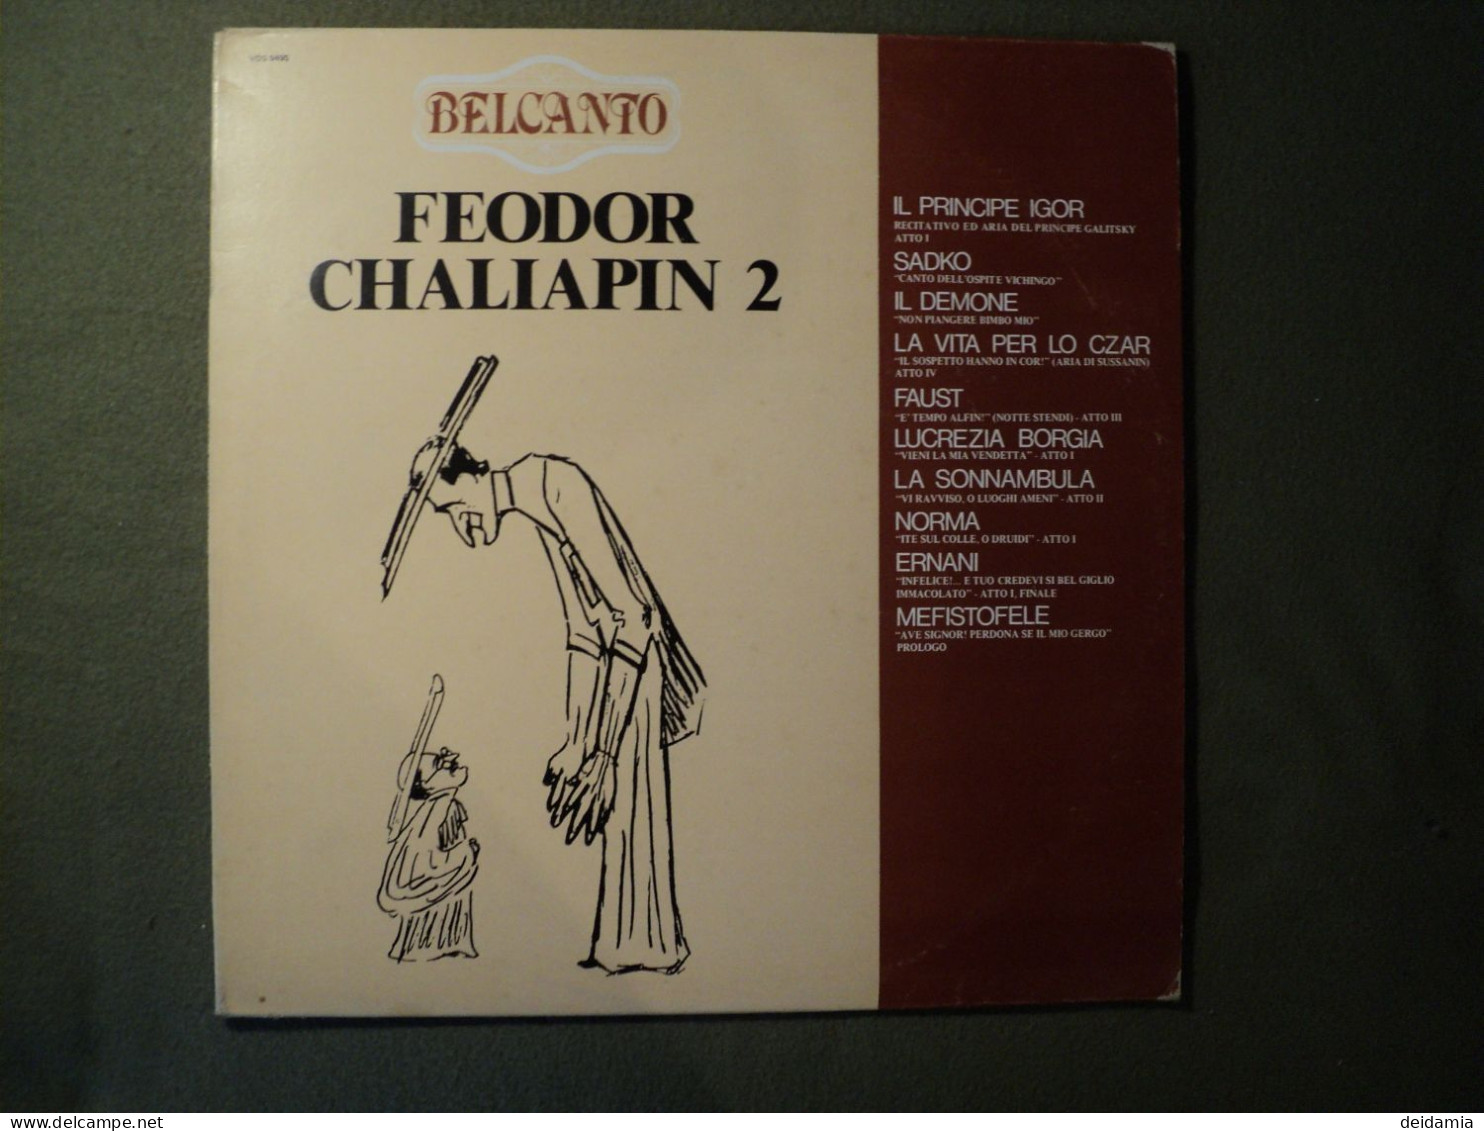 33 TOURS FEODOR CHALIAPIN. 1980. VOLUME 2. BELCANTO. VDS 9495 IL PRINCIPE IGOR / SADKO / IL DEMONE / LA VITA PER LO CZAR - Altri - Musica Italiana